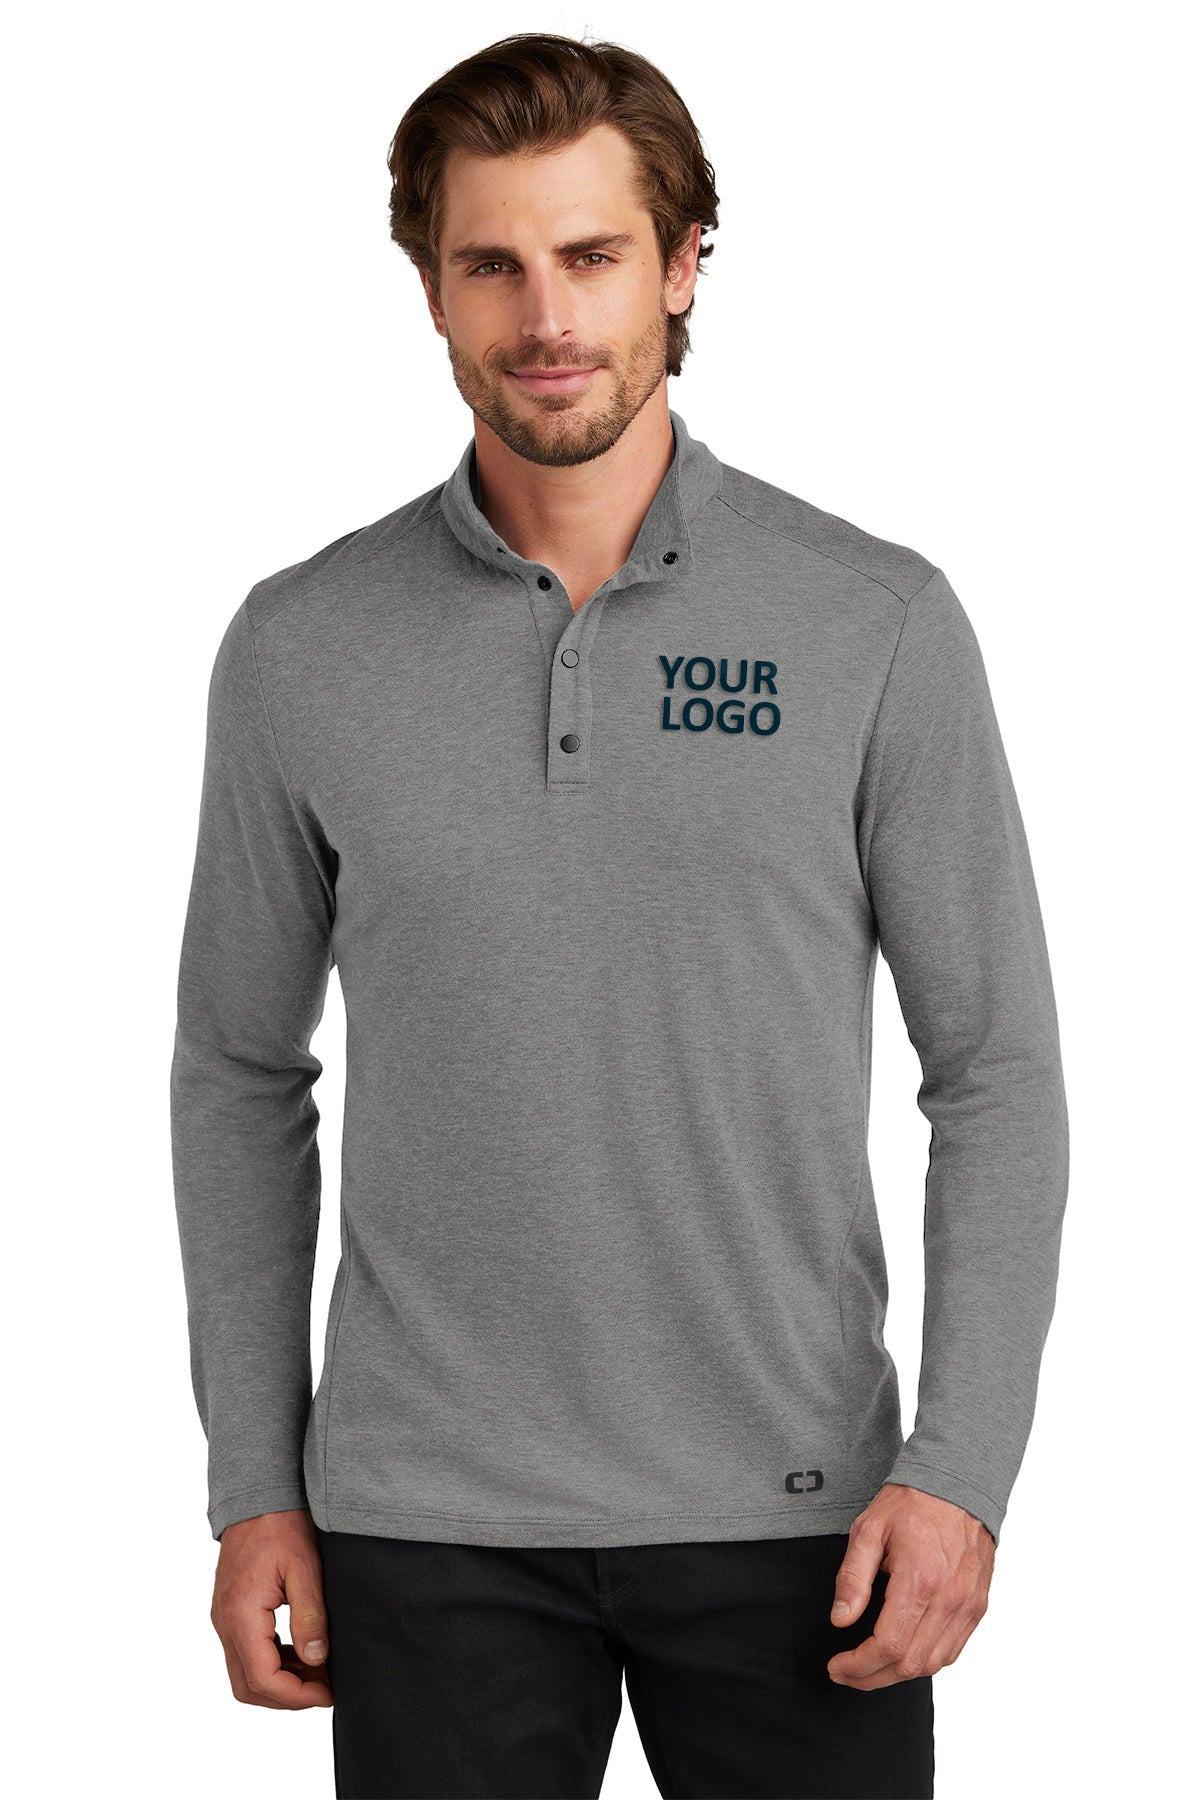 OGIO Gear Grey OG151 custom sweatshirts with logo